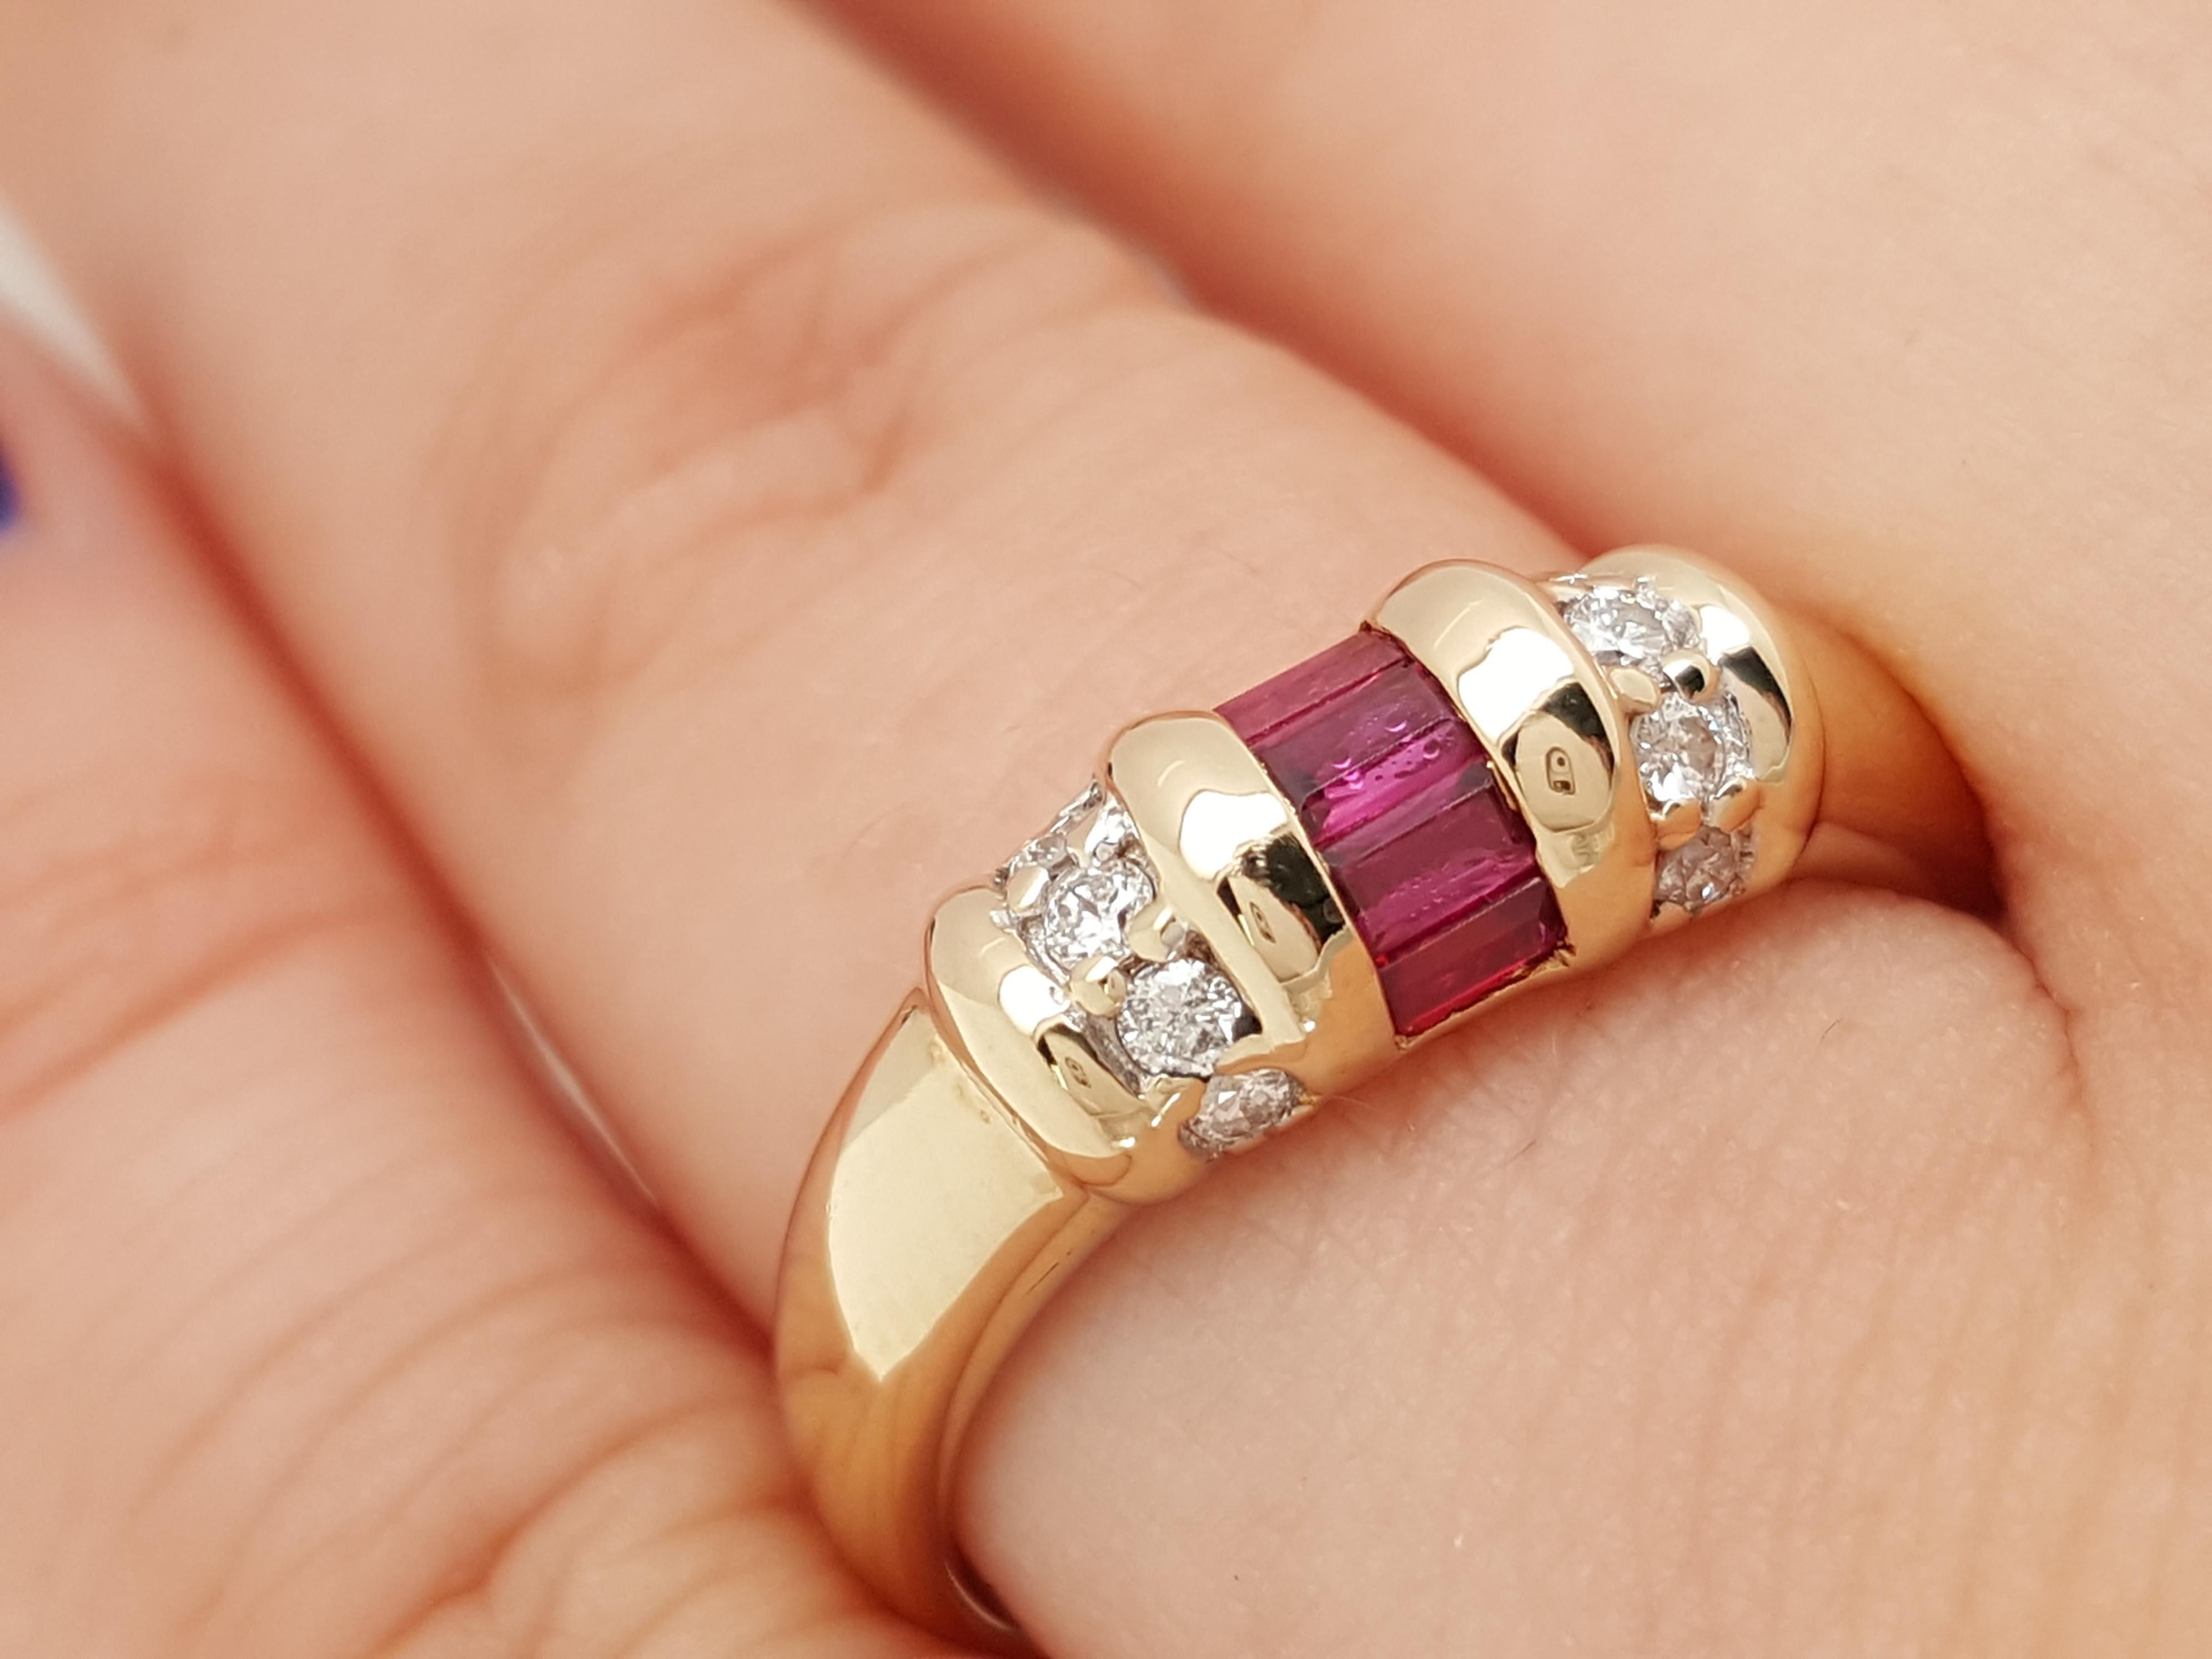 Dies ist ein exquisites Beispiel für ein Rubin-Diamantband im Vintage-Stil. Es ist in Gelbgold gefertigt und in der Mitte befinden sich 5 blutrote Baguette-Rubine von feinster Qualität, die mit 6 runden Diamanten im Brillantschliff akzentuiert sind.